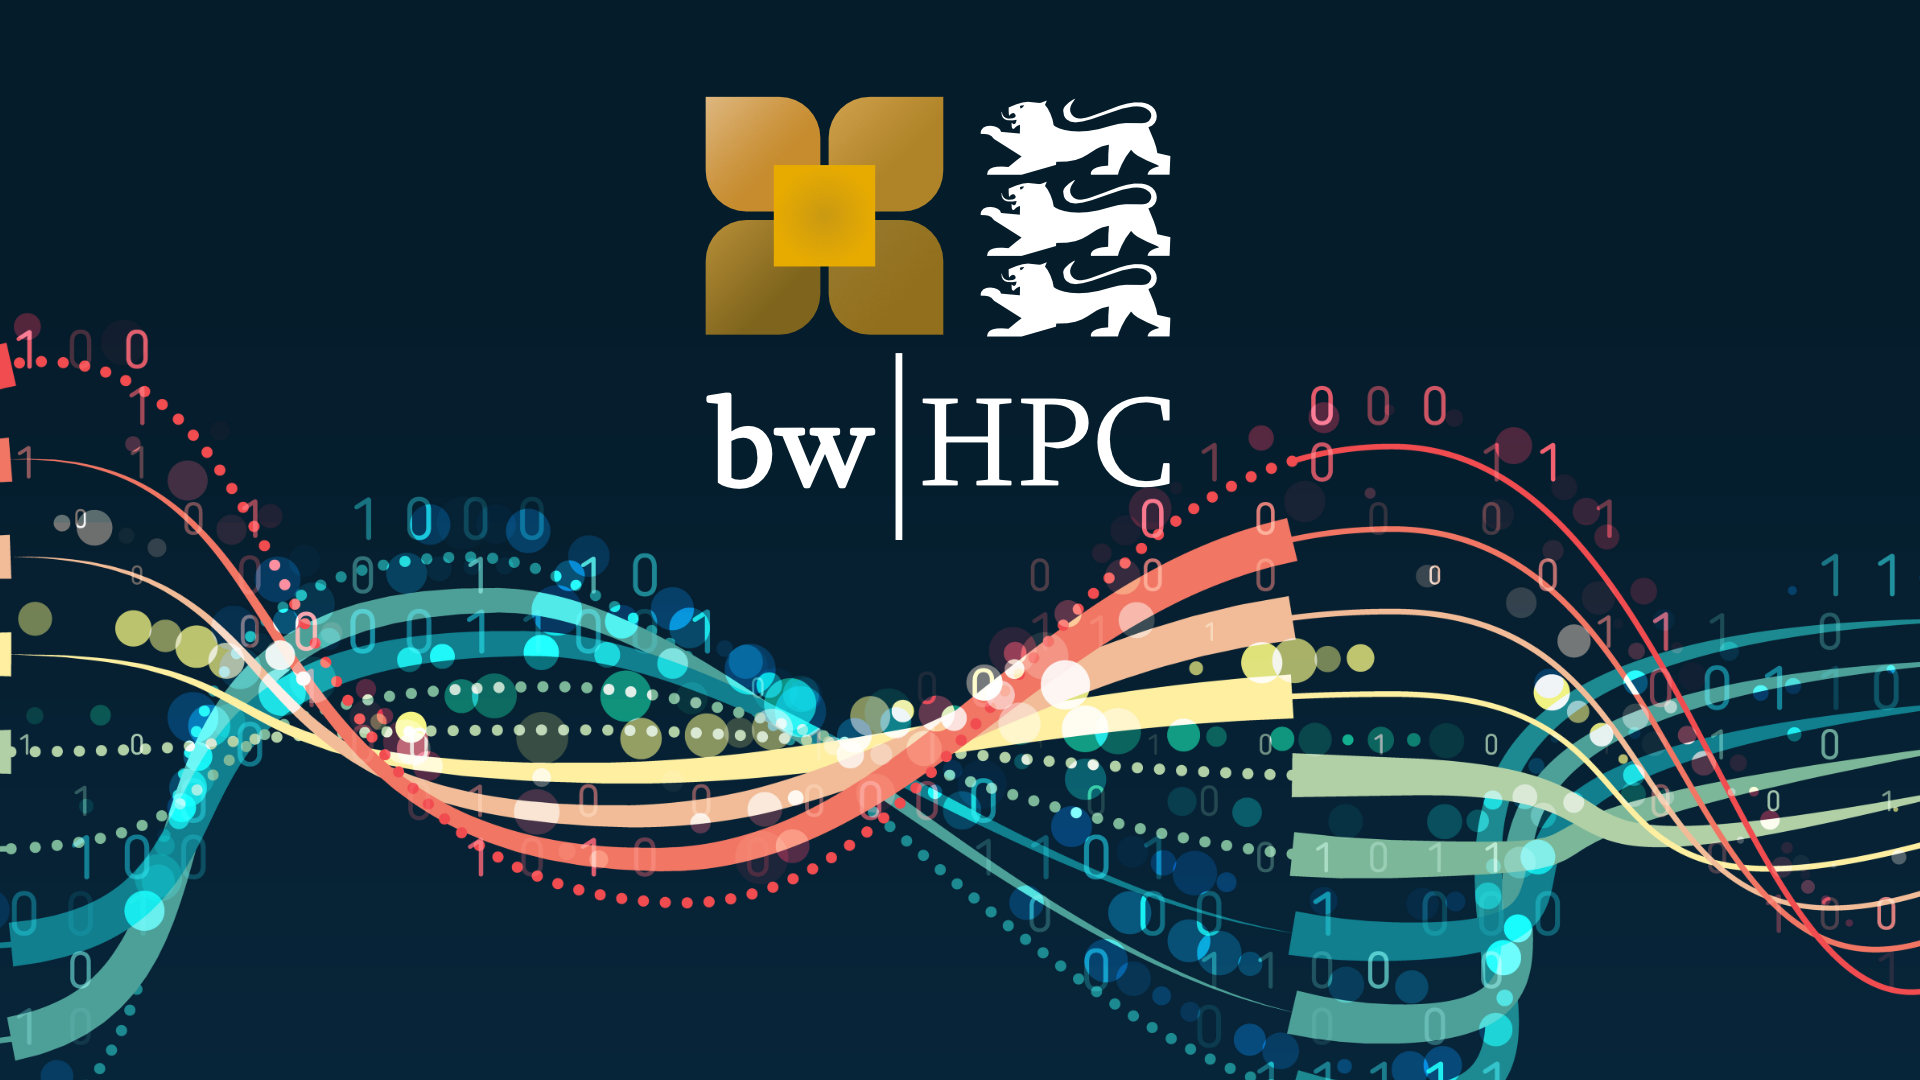 Futuristic reprenstation of a binary chain with the bwHPC Logo